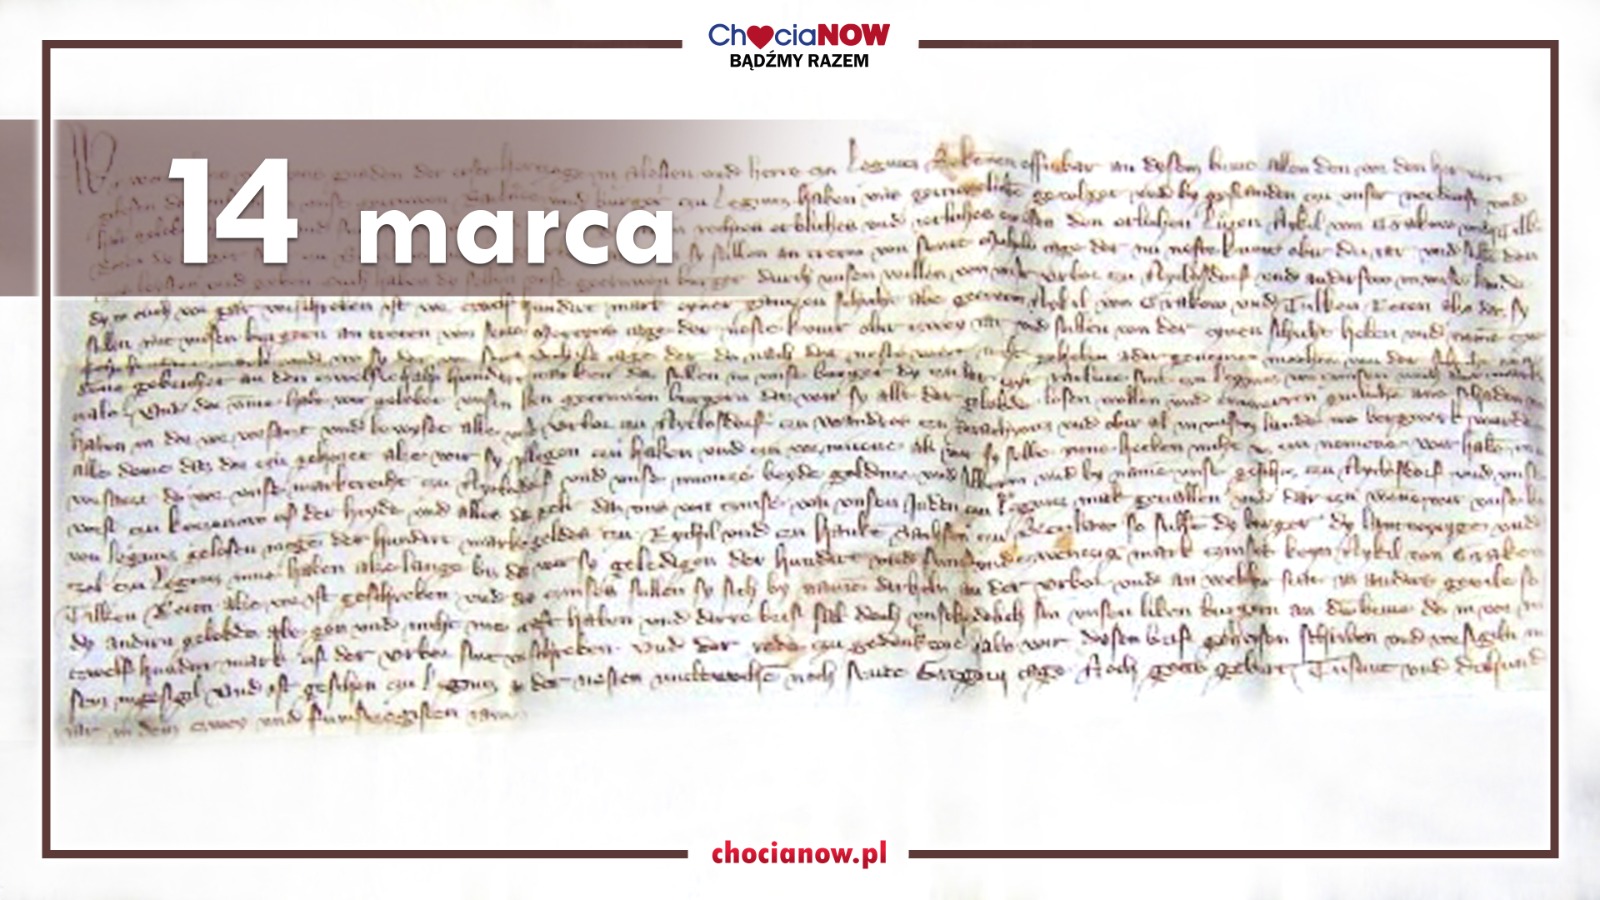 14 marca, najstarszy dokument o Chocianowie 